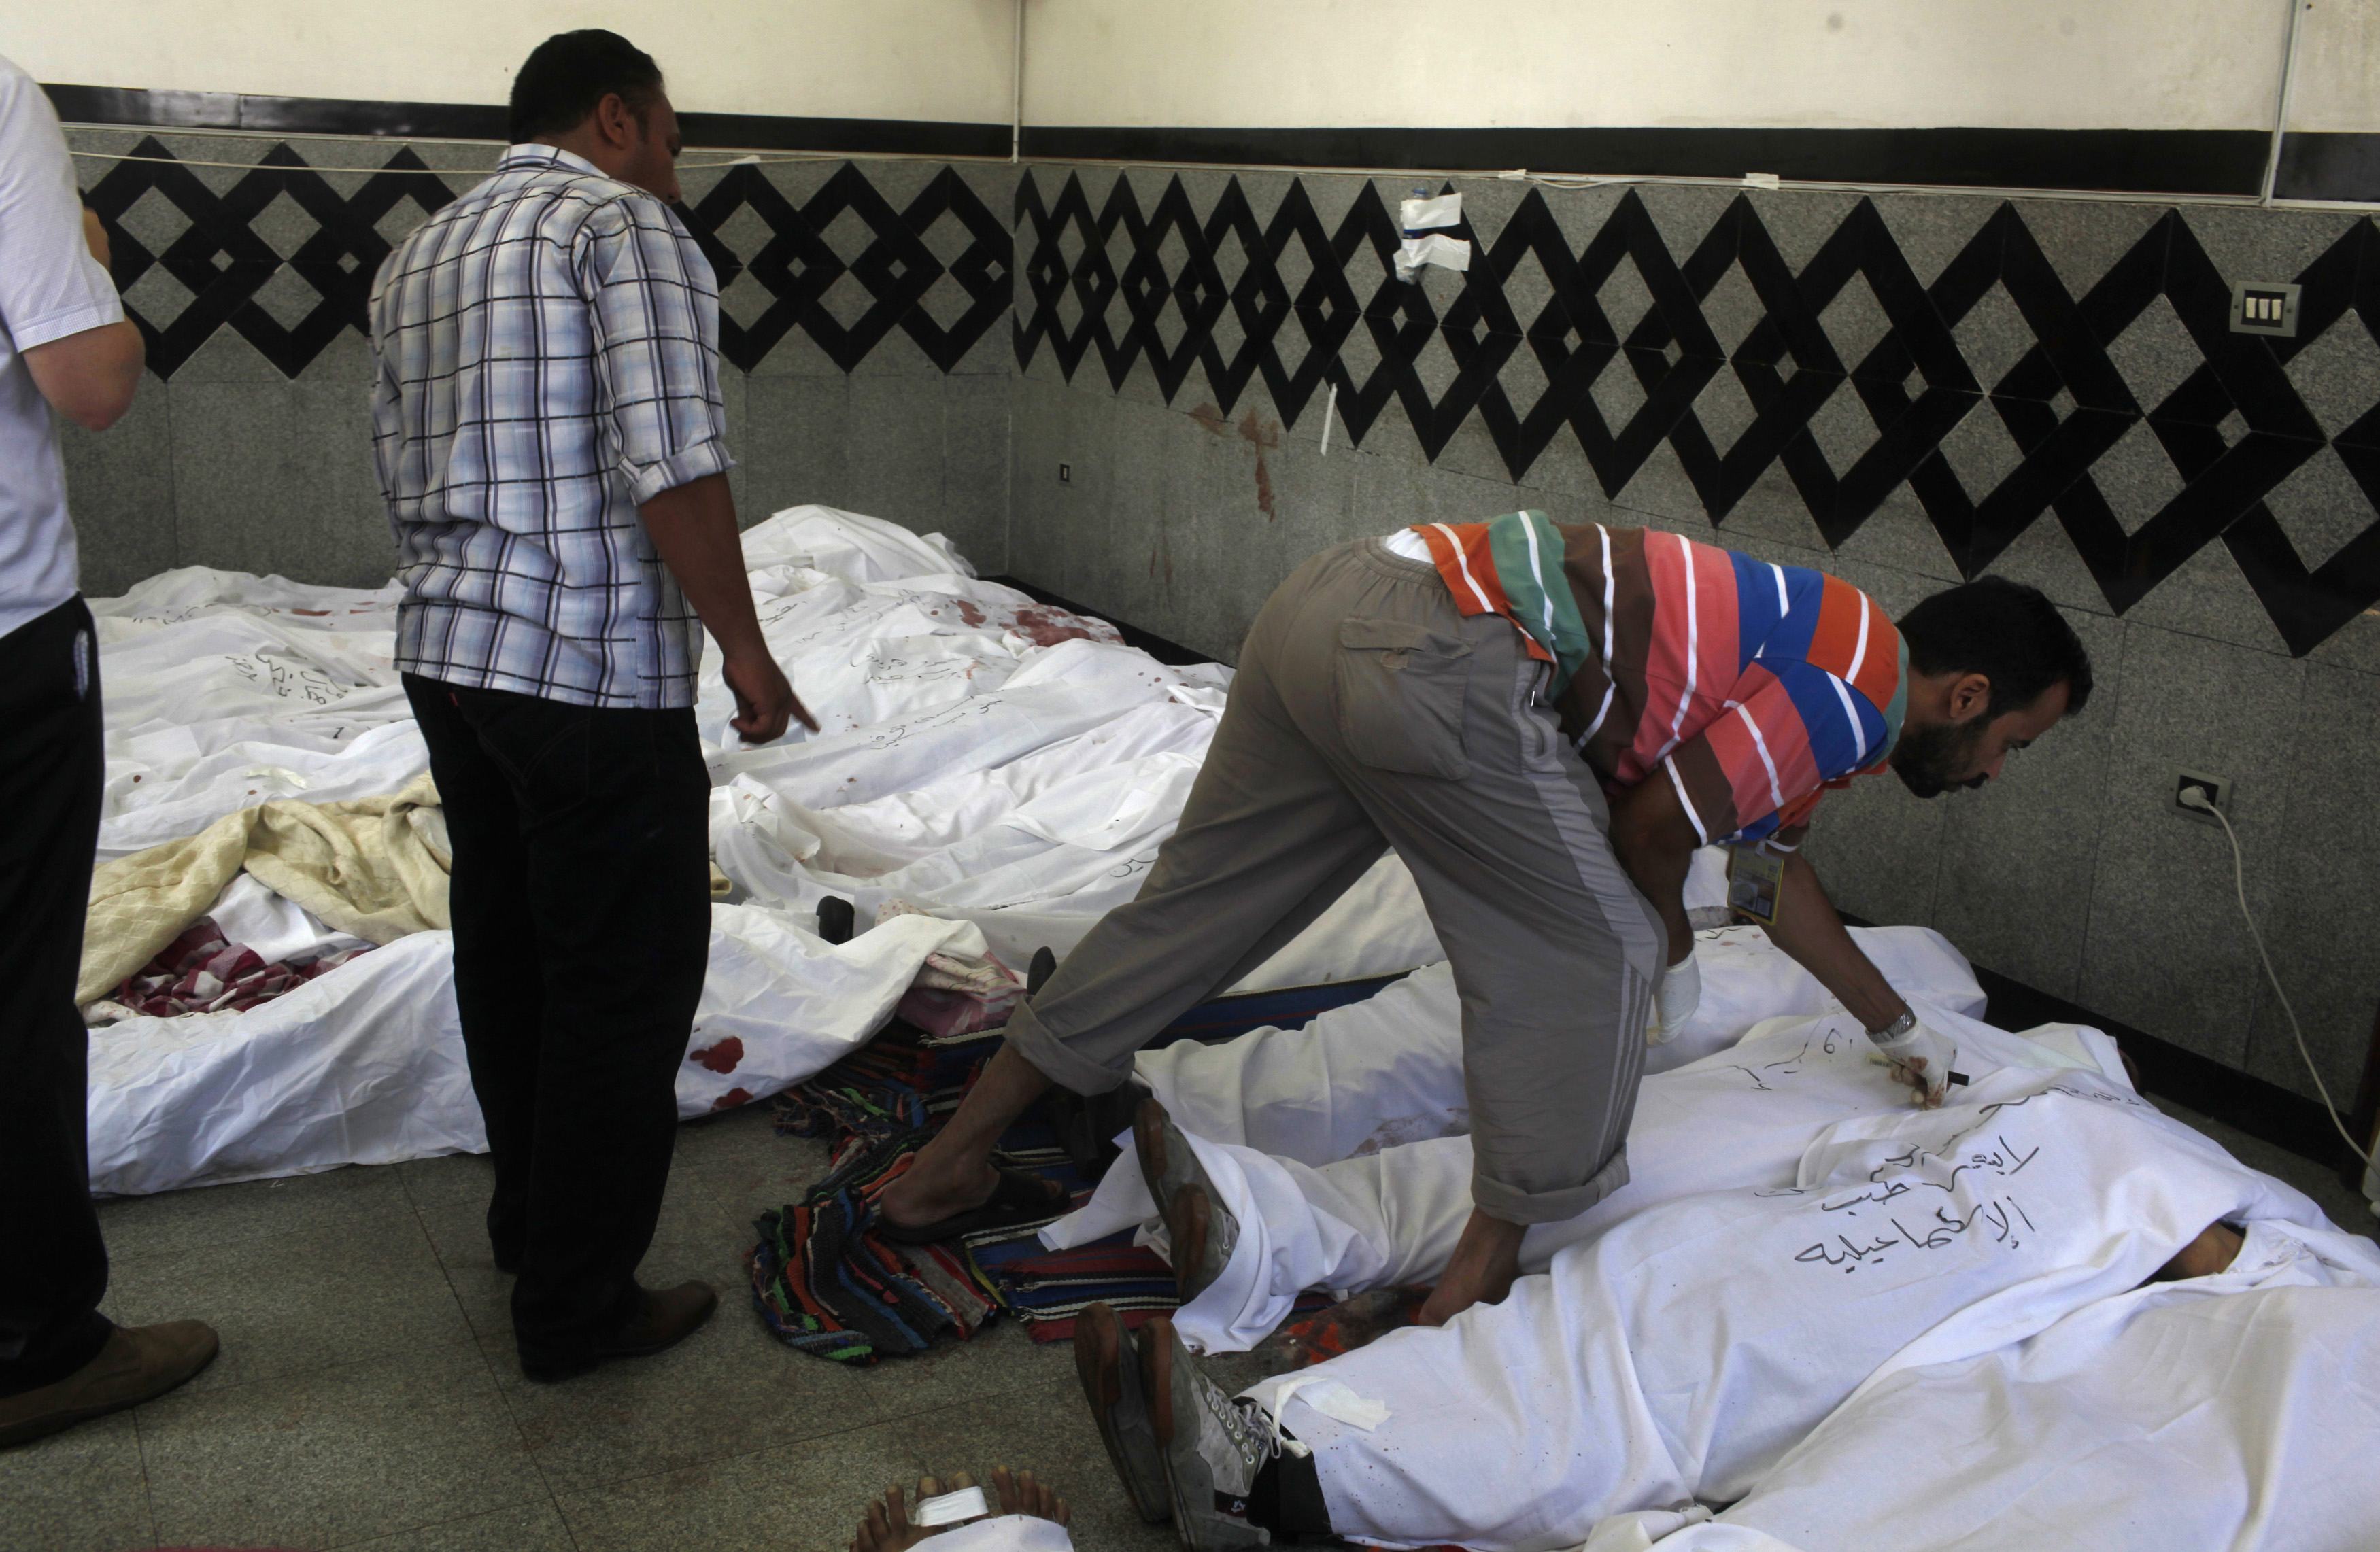 Αναζητούς τους δικούς τους ανθρώπους αναμεσα στα πτώματα - ΦΩΤΟ REUTERS